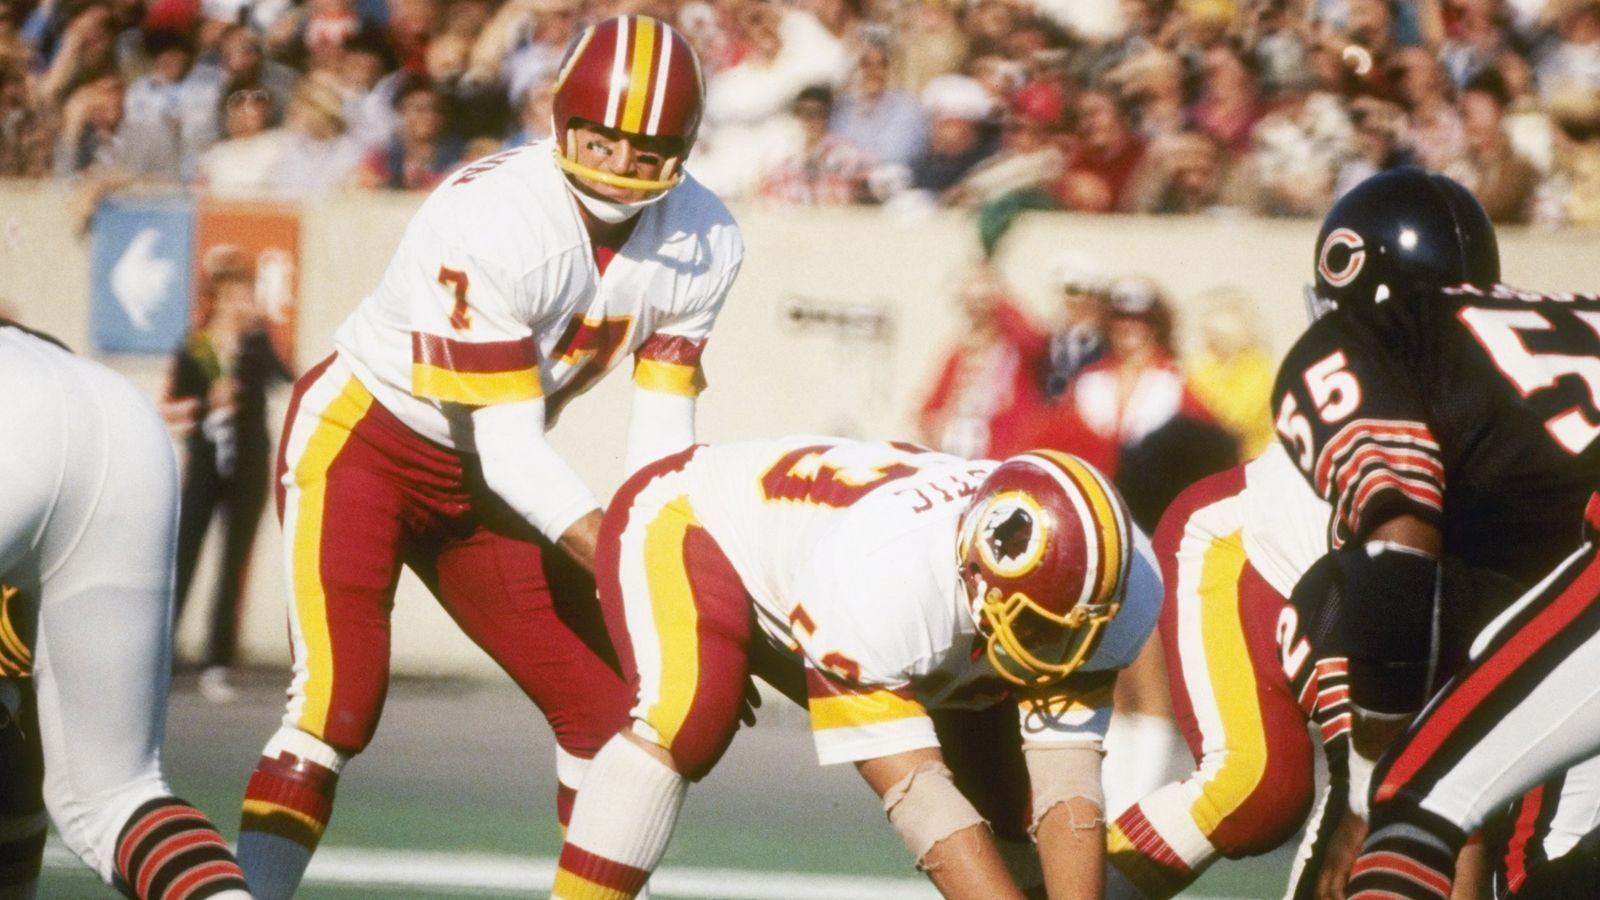 
                <strong>Joe Theismann (Washington Redskins) - Quarterback</strong><br>
                Der legendäre Quarterback der Redskins wurde in der vierten Runde des Draft 1971 von den Miami Dolphins gewählt, entschied sich aber für eine Karriere in der CFL bei den Toronto Argonauts. 1974 wechselte Theismann zurück in die USA und spielte in seiner ersten Saison als Punt Returner, ehe er 1978 zum Starting-Quarterback der Redskins ernannt wurde. In der Saison 1982 führte er die Franchise zu ihrem ersten Super-Bowl-Sieg, 1983 wurde Theismann als League-MVP ausgezeichnet und kehrte mit Washington zurück in den Super Bowl. Nach einer schweren Verletzung musste der zweimalige Pro Bowler dann 1985 seine Karriere beenden.
              